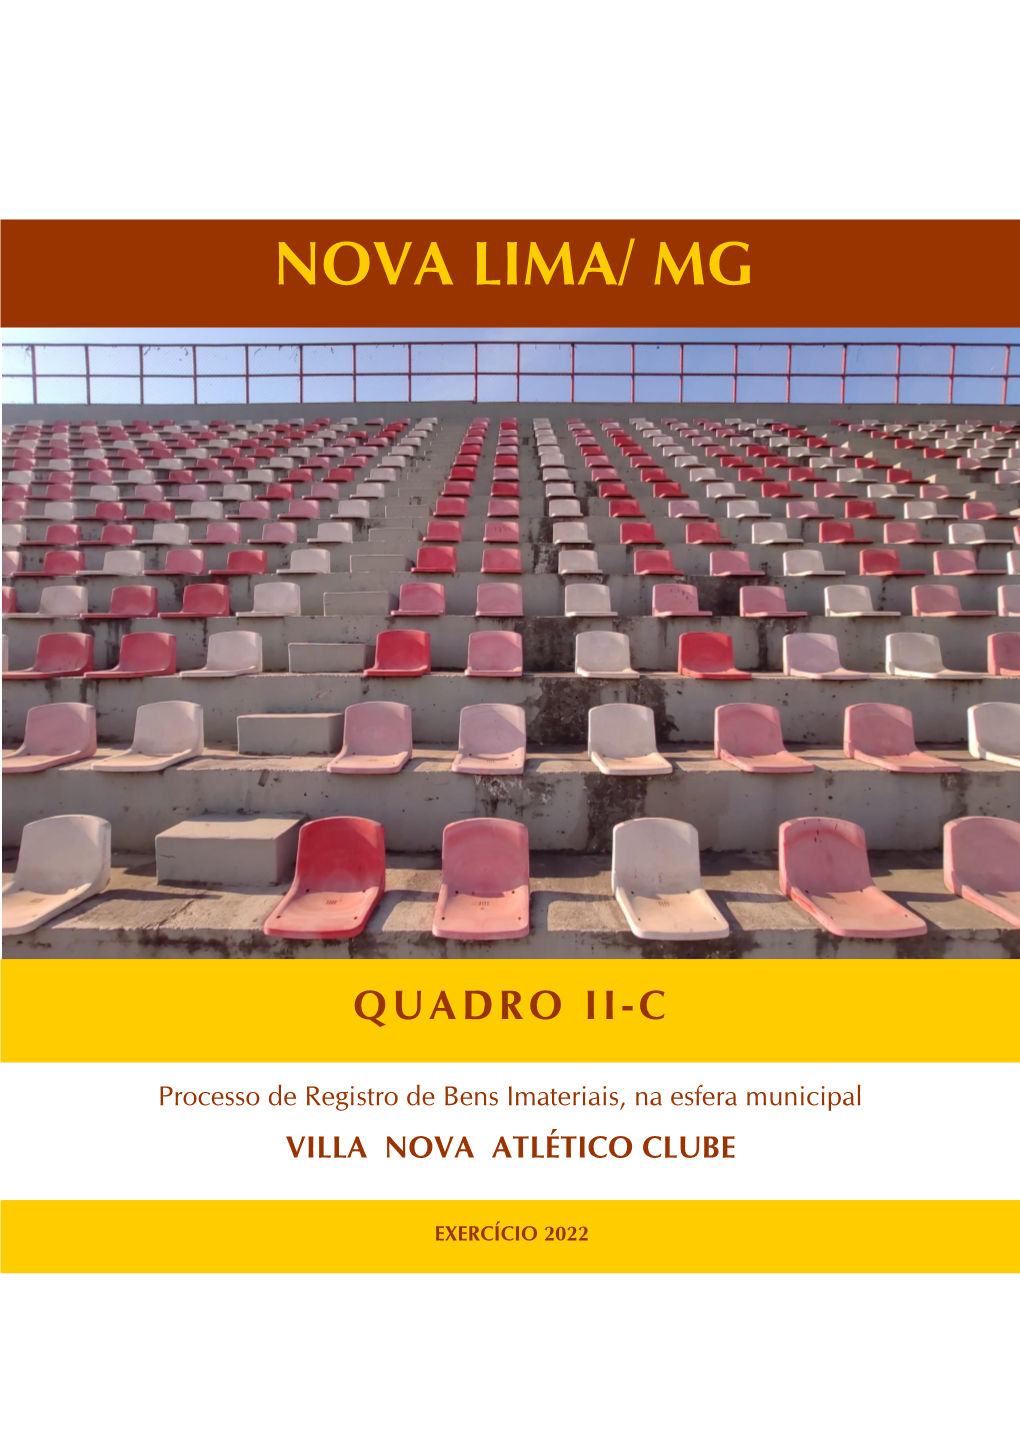 Nova Lima/ Mg